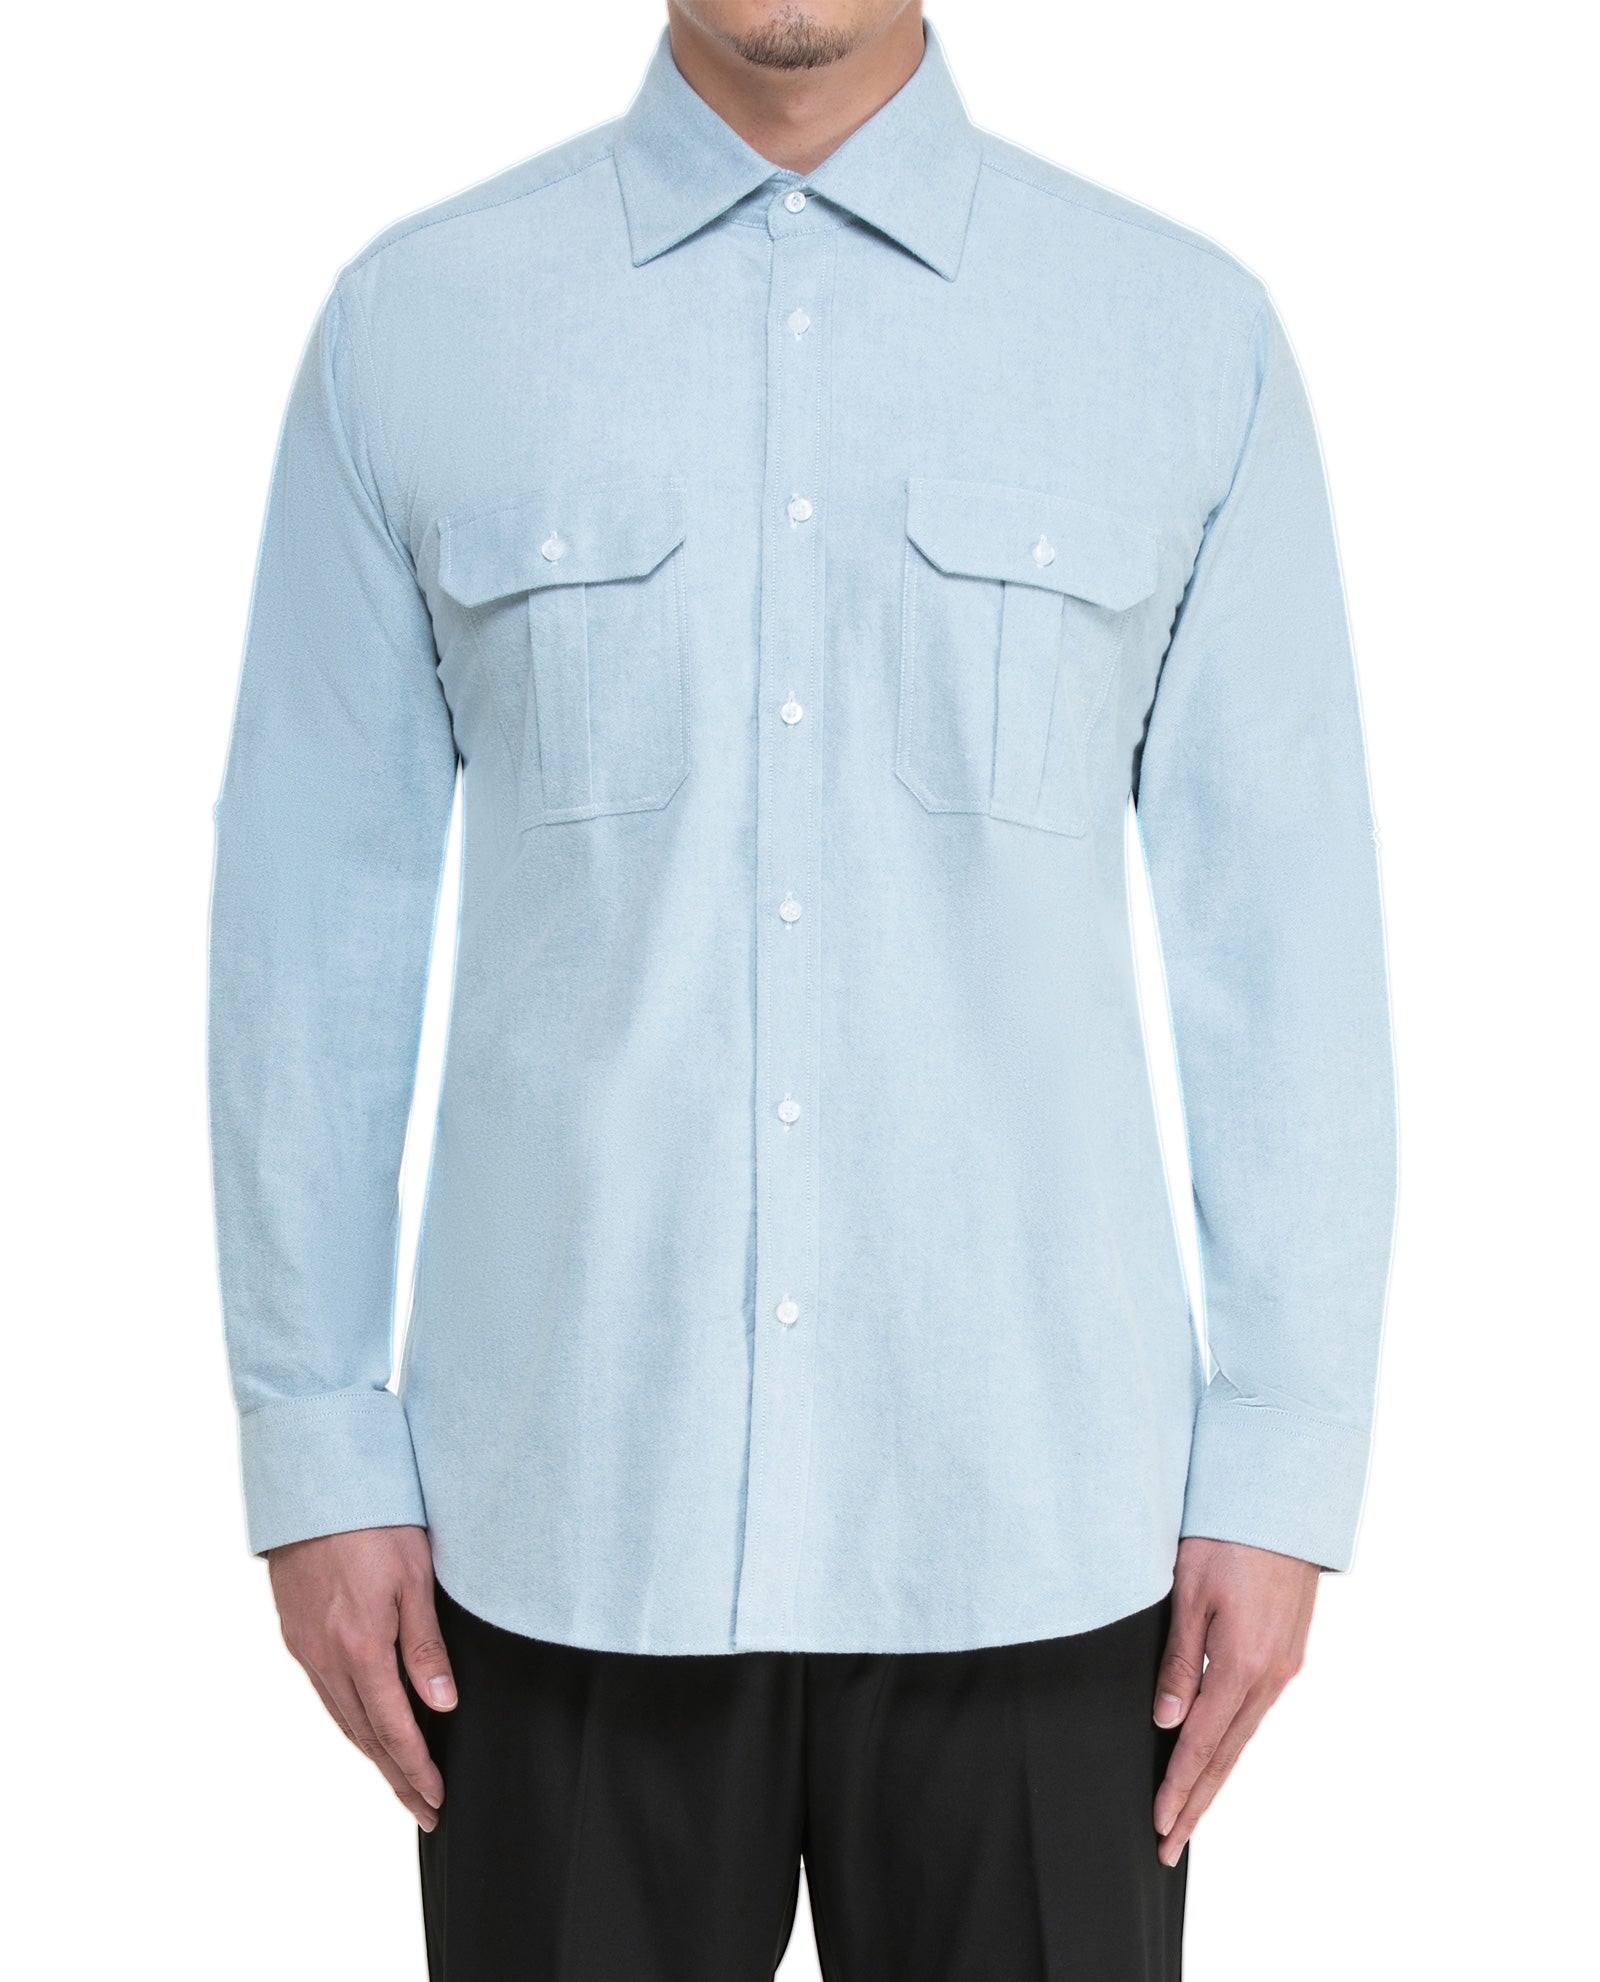 Men's Light Grey Flannel Sport Shirt